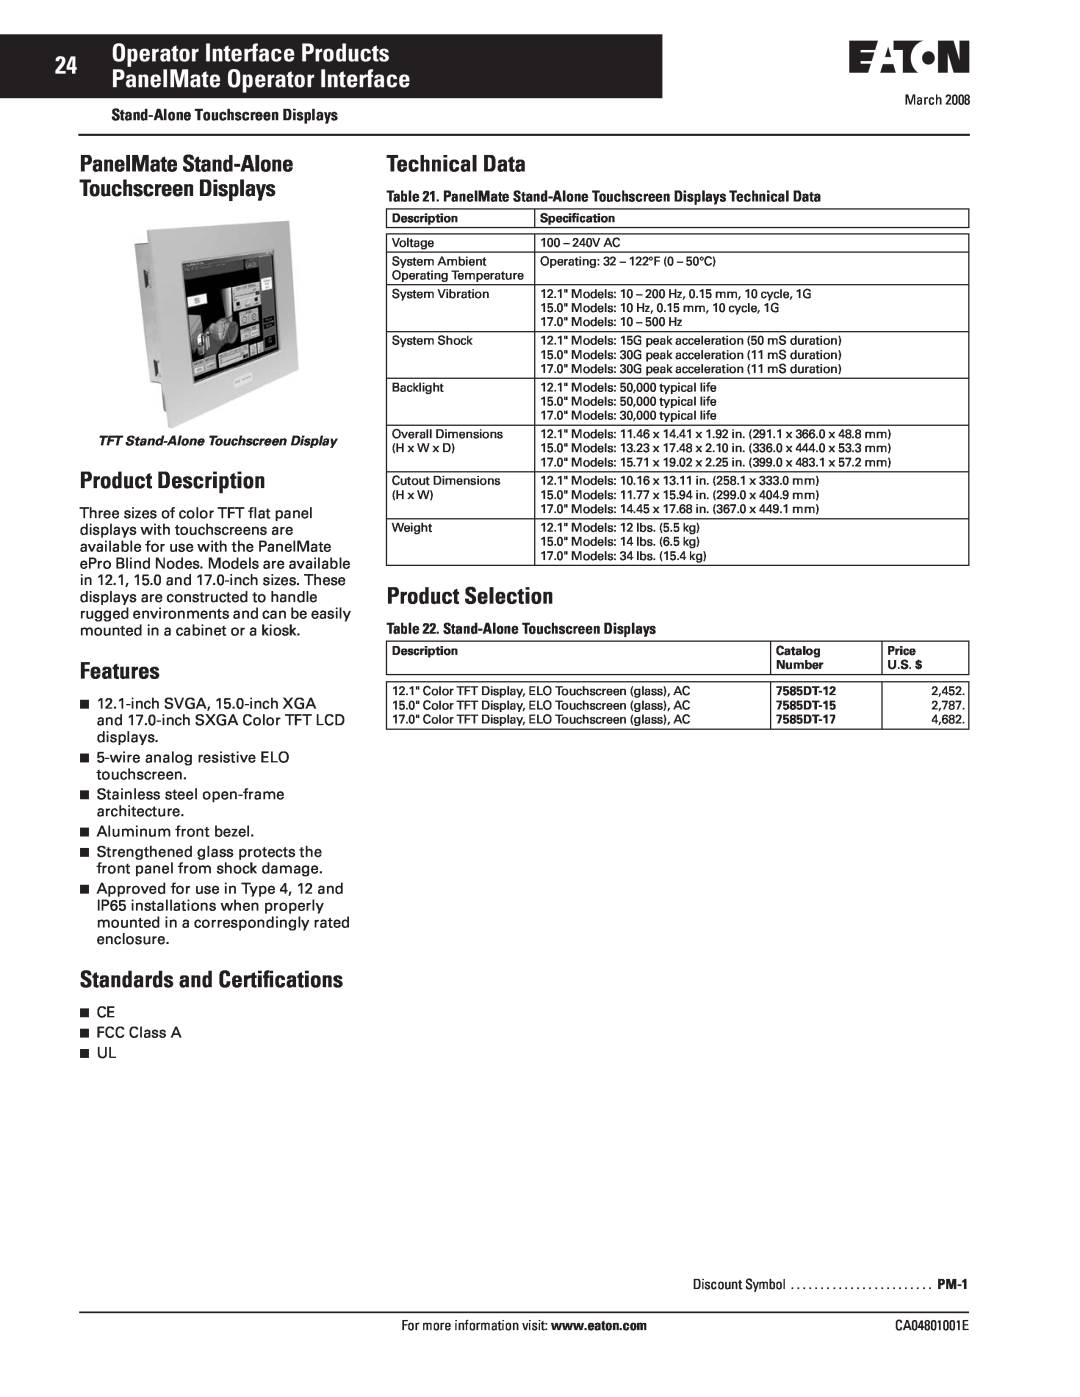 Eaton Electrical CA04801001E manual Operator Interface Products PanelMate Operator Interface, Product Description, Features 